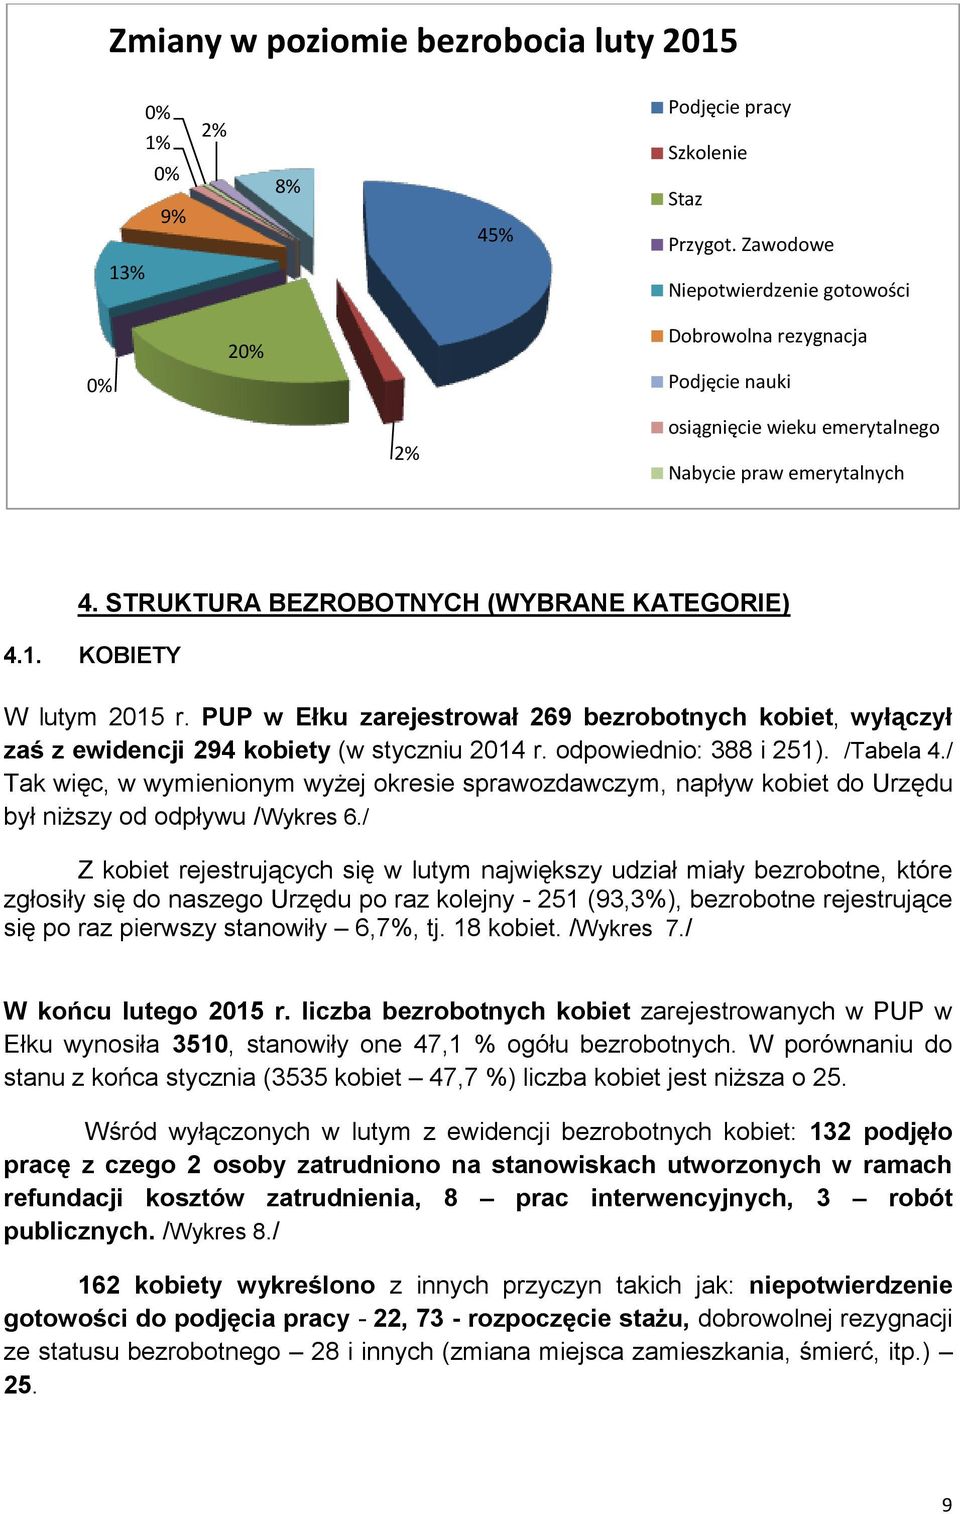 KOBIETY W lutym 2015 r. PUP w Ełku zarejestrował 269 bezrobotnych kobiet, wyłączył zaś z ewidencji 294 kobiety (w styczniu 2014 r. odpowiednio: 388 i 251). /Tabela 4.